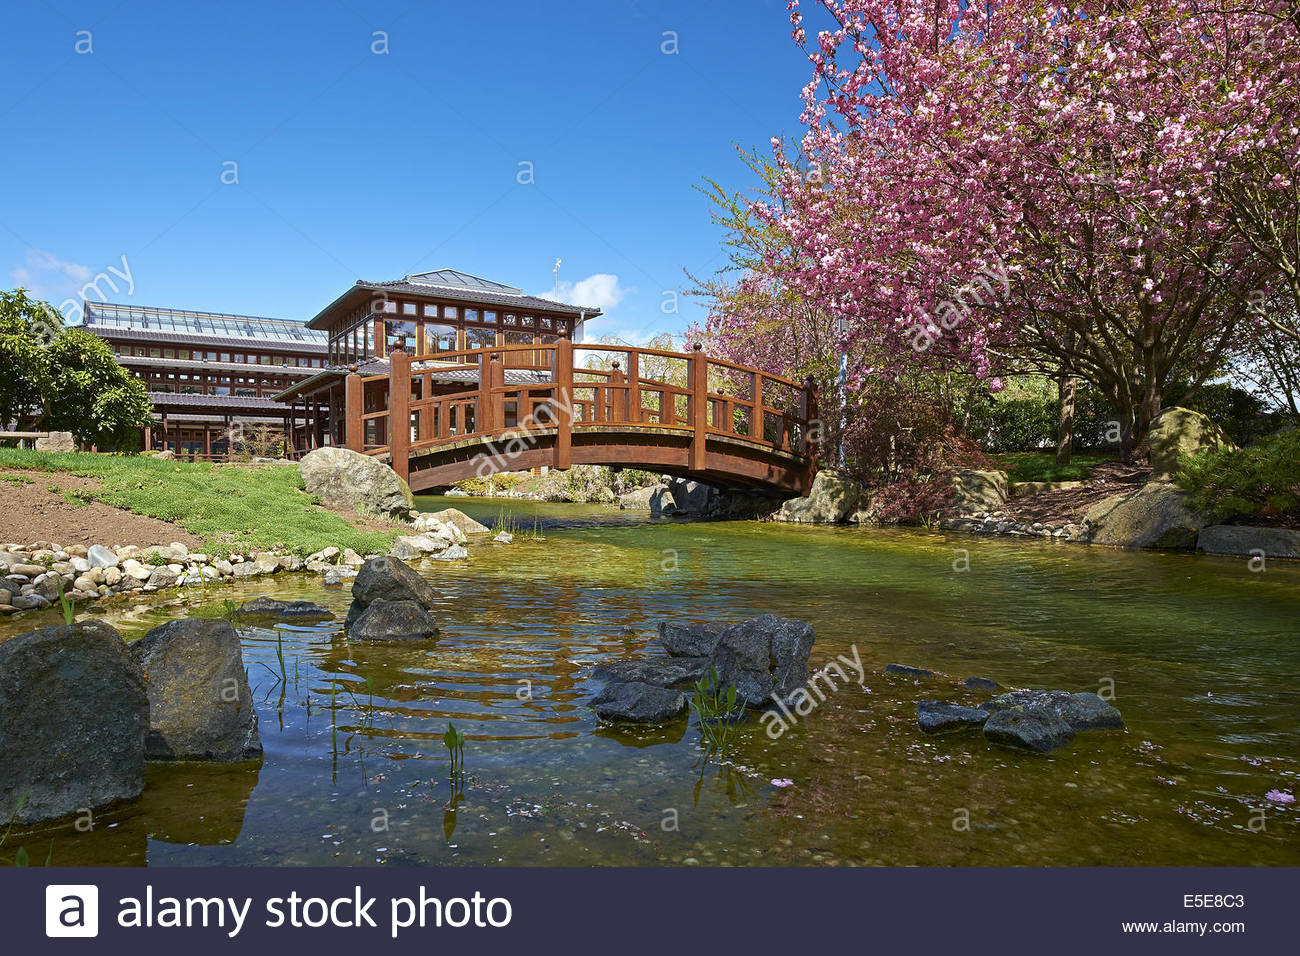 Bad Langensalza Japanischer Garten Elegant Gartenbrücken Stockfotos & Gartenbrücken Bilder Alamy